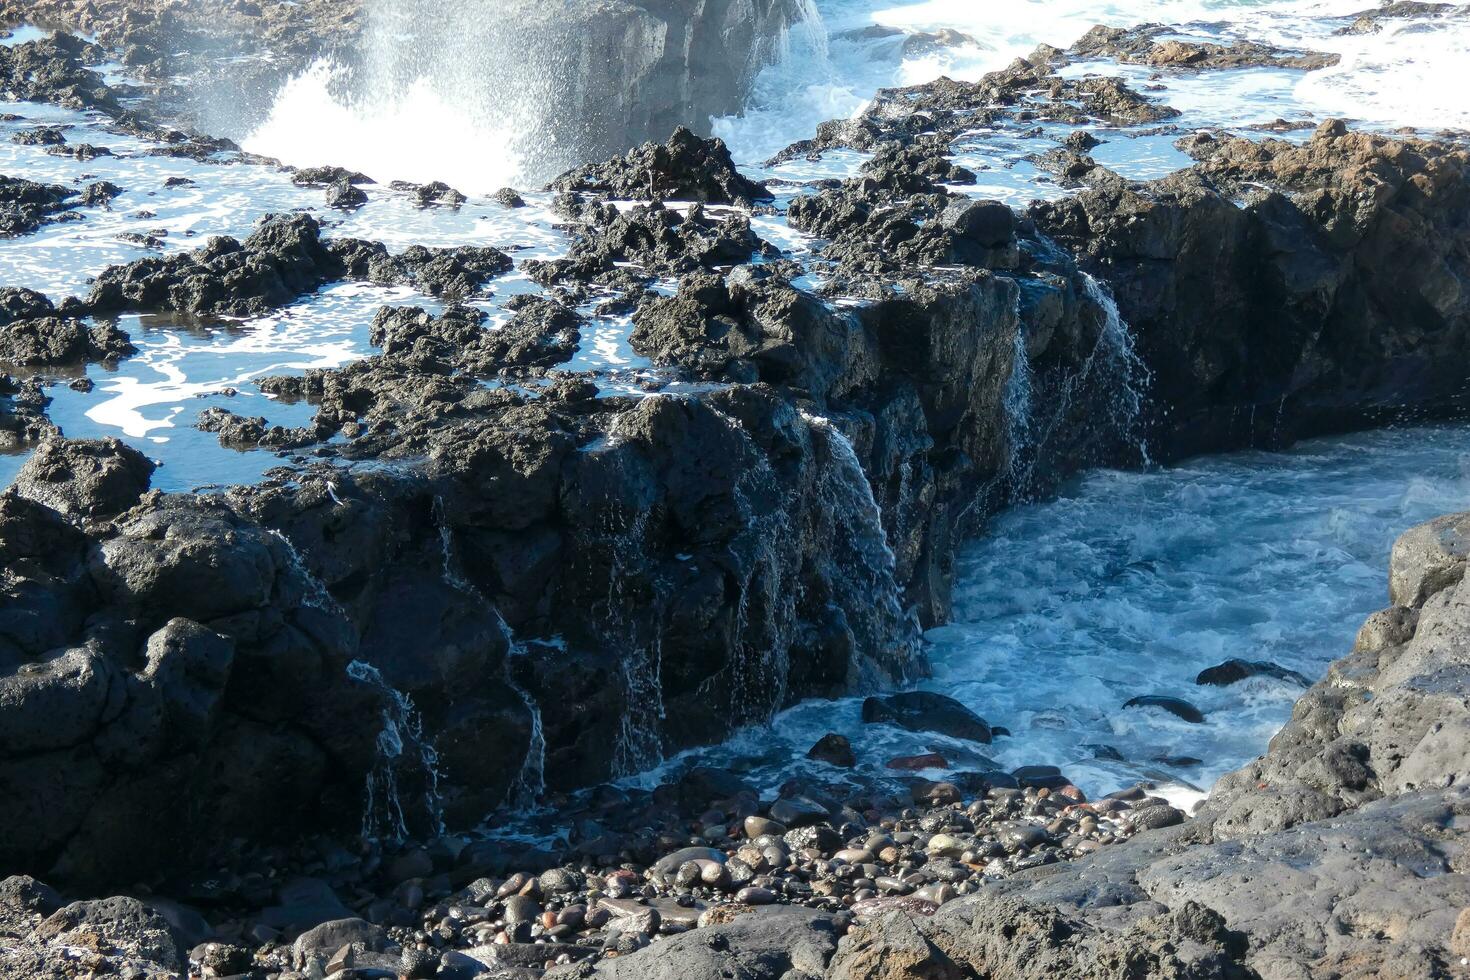 ampla ondas falhando contra a pedras dentro a oceano foto